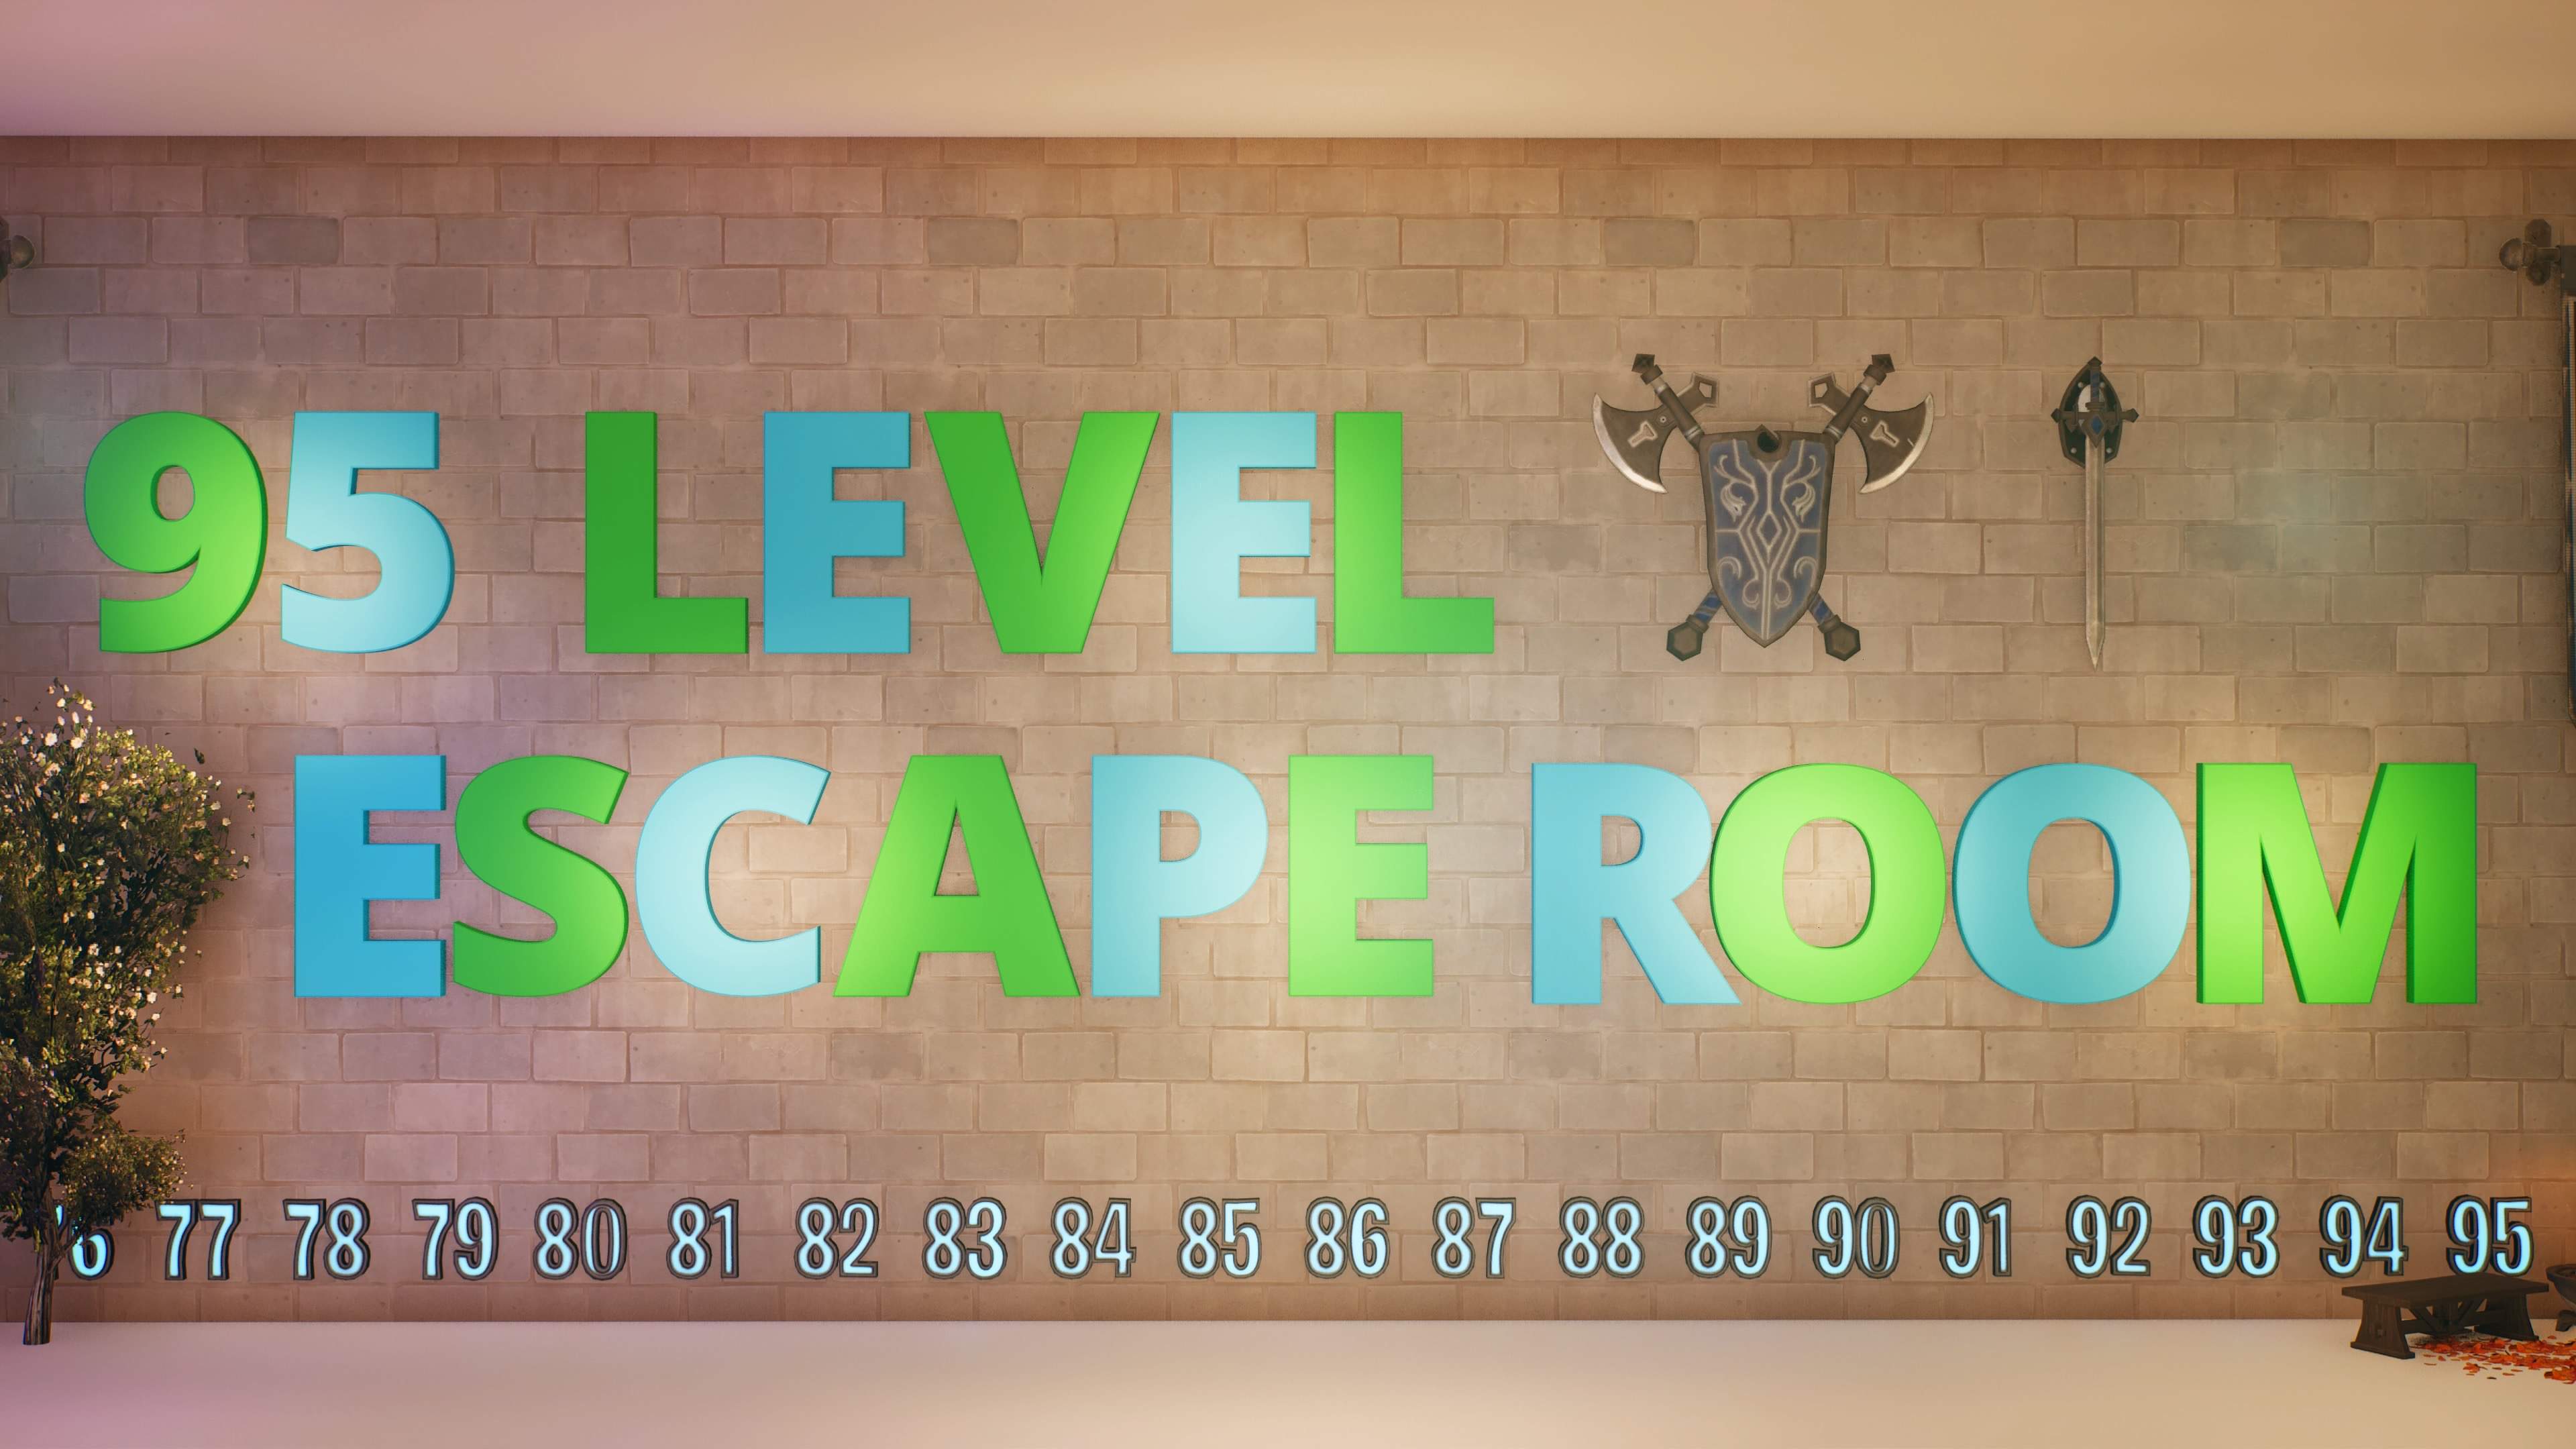 95 Level Escape Room